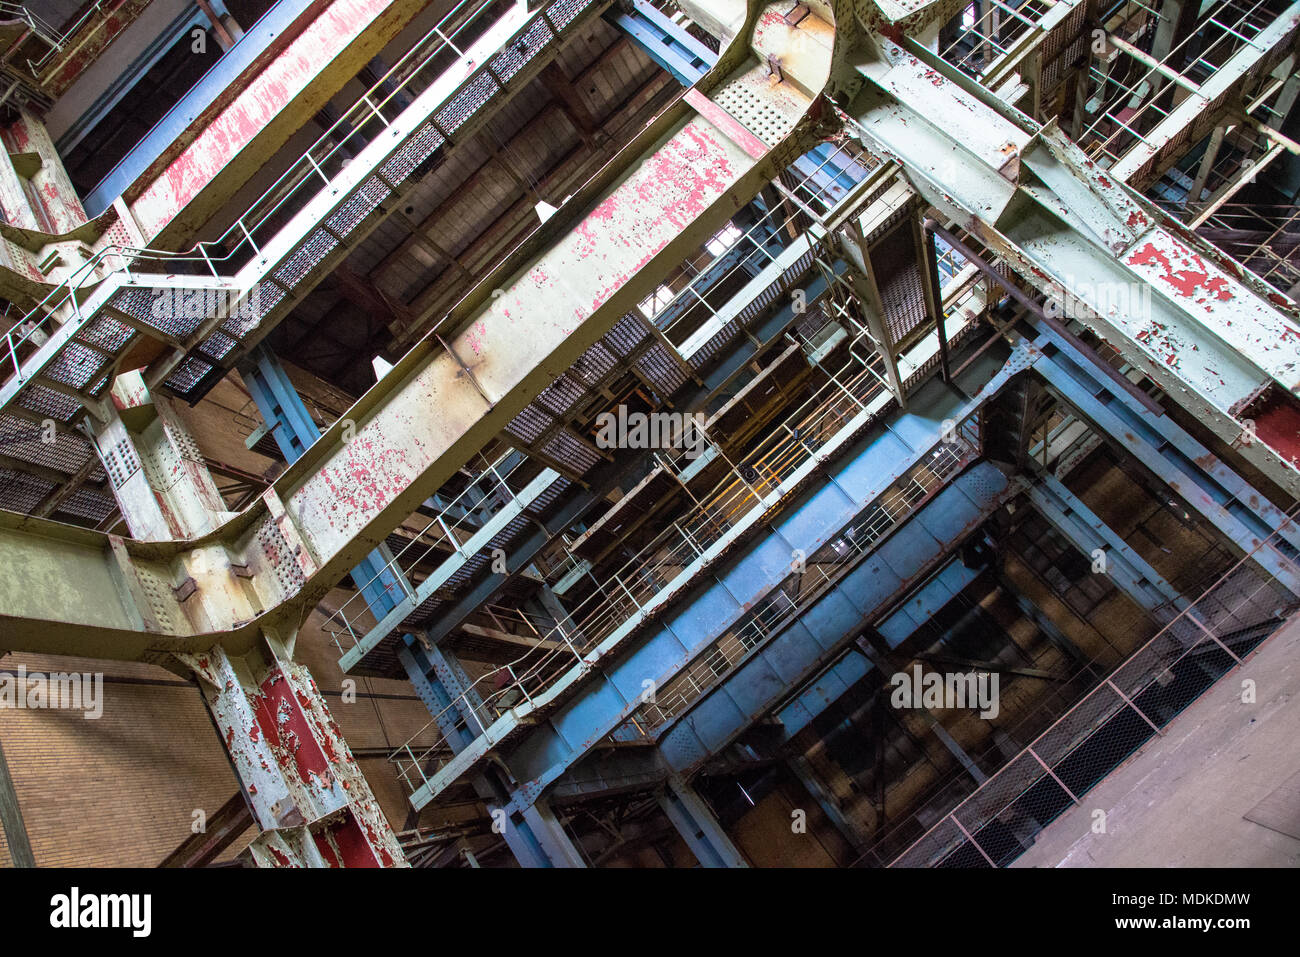 Verlassen power station mit riesigen stahlträger Stockfoto